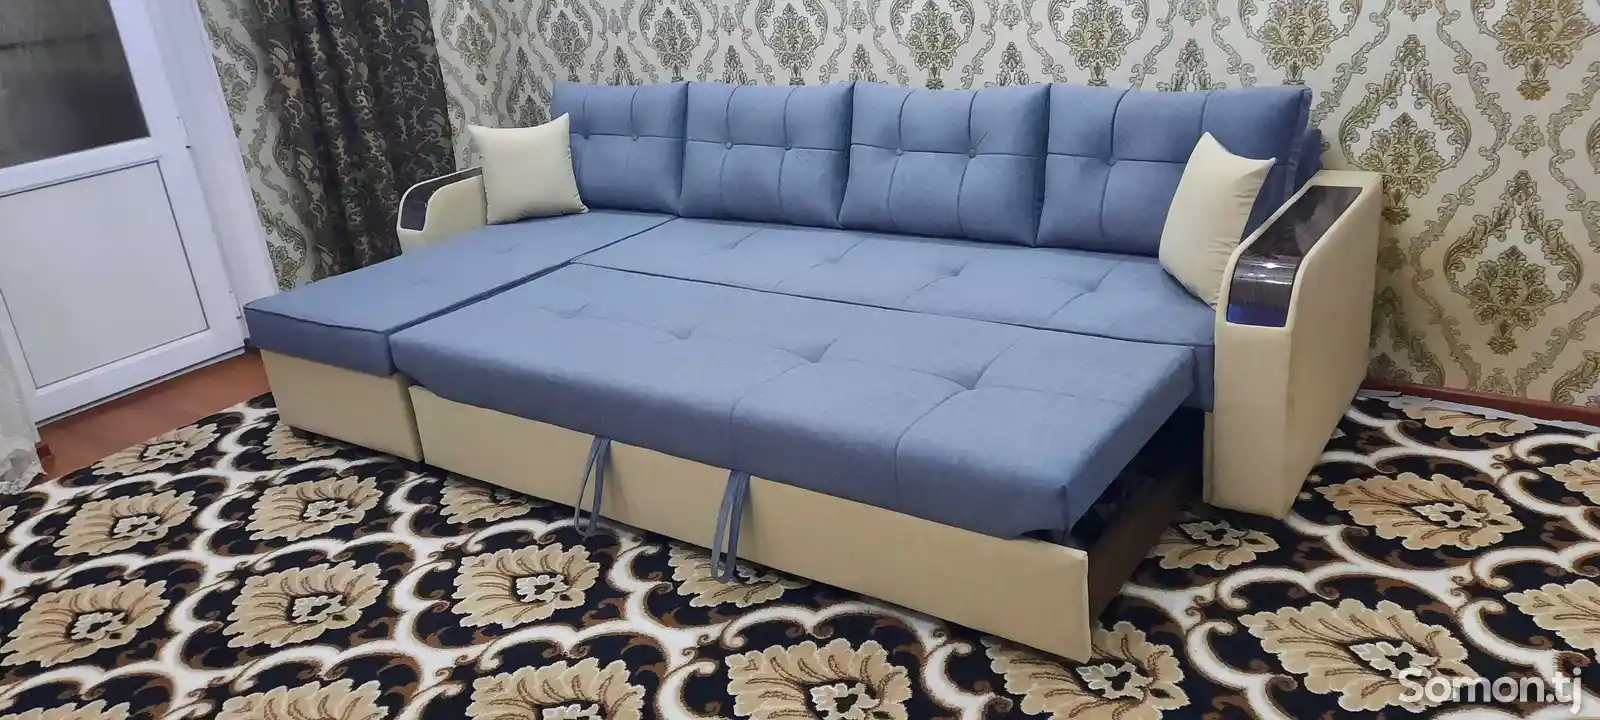 Раскладной диван хайтек на заказ-2